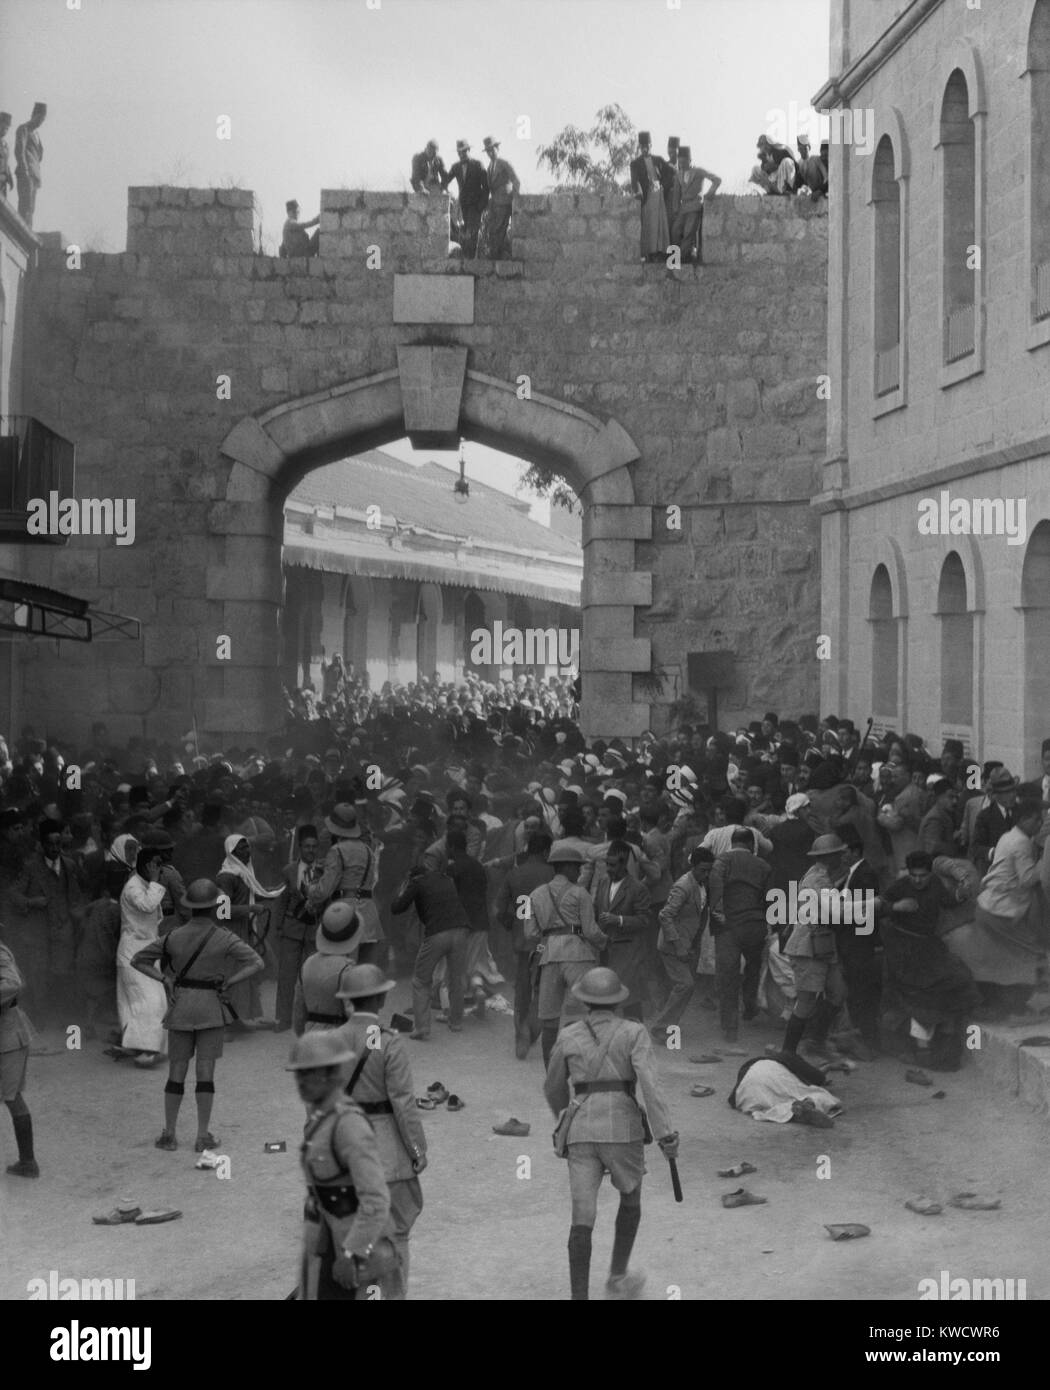 Dimostrazione di arabi a Porta Nuova, Gerusalemme, come il cordone di polizia bloccato la processione. 13 ottobre, 1933. Avviato dall'Arabo Comitato Esecutivo, la polizia ha disperso la protesta con i loro bastoni antisommossa (BSLOC 2017 1 197) Foto Stock